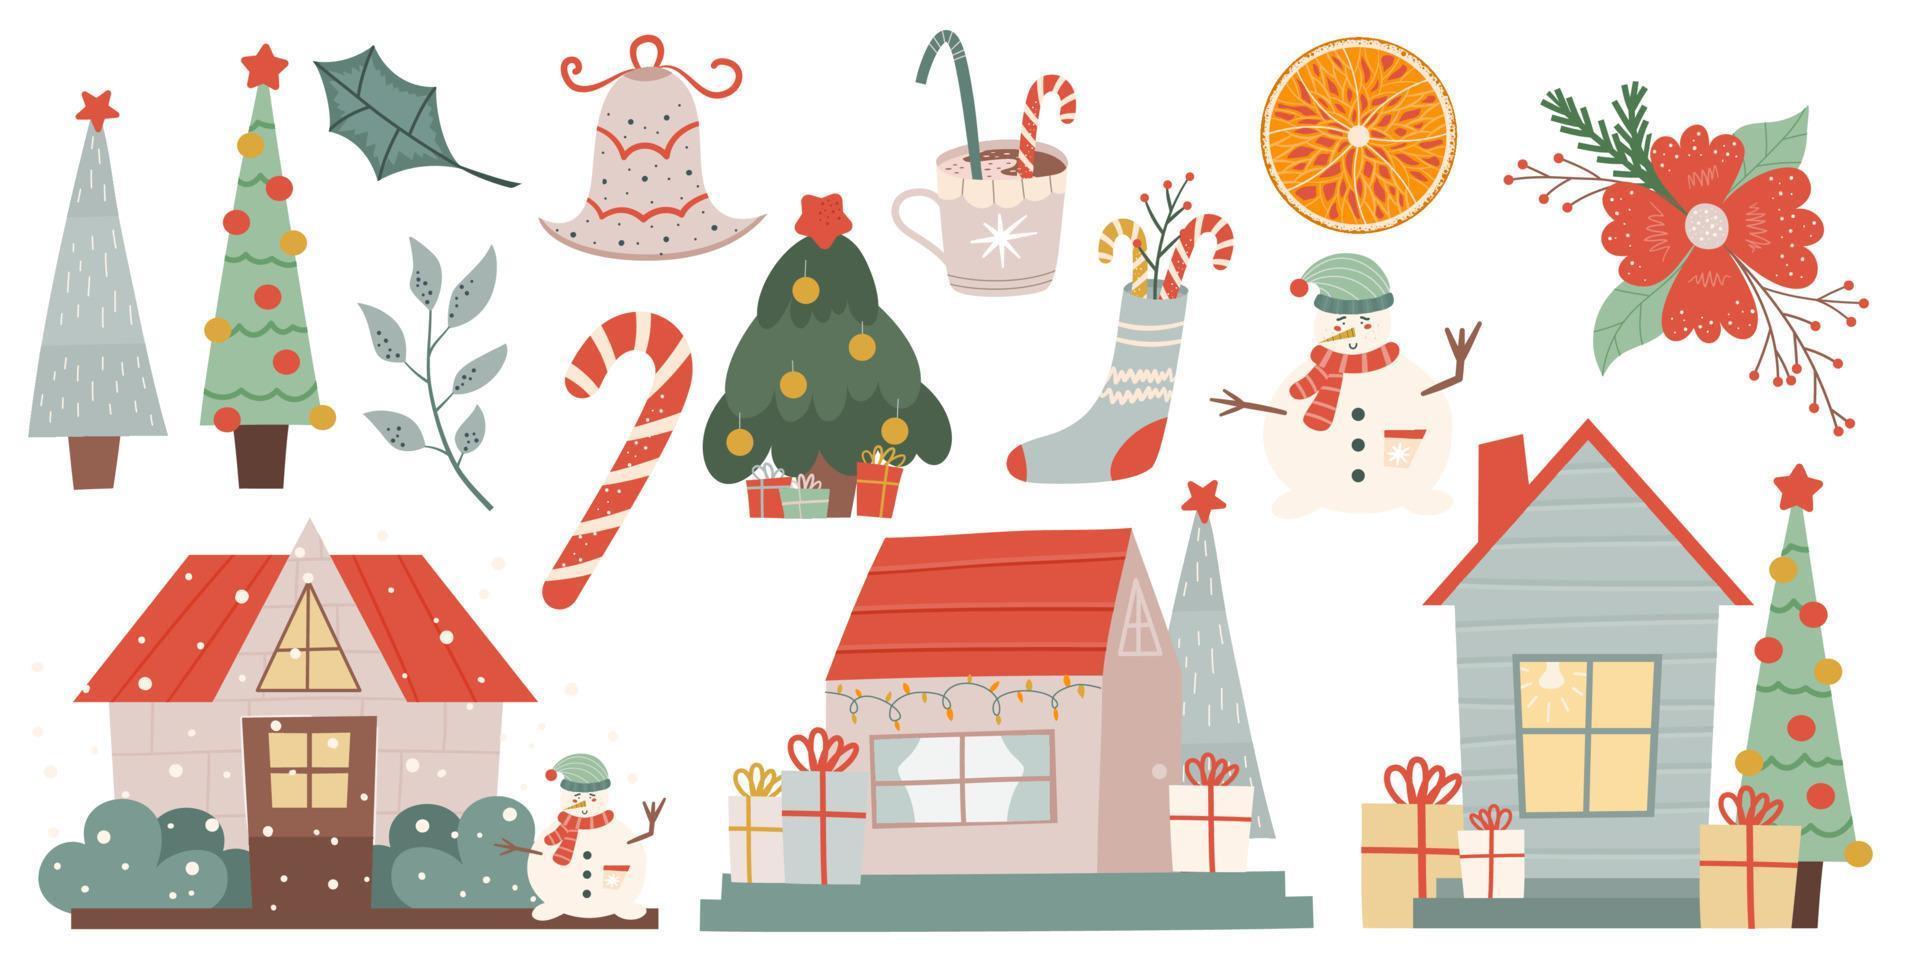 vinter jul set ClipArt isolerad på vit bakgrund. vinter hus, snögubbe, granar, apelsin och julblomma för dekoration och festlig prydnad. vektor illustration i platt stil